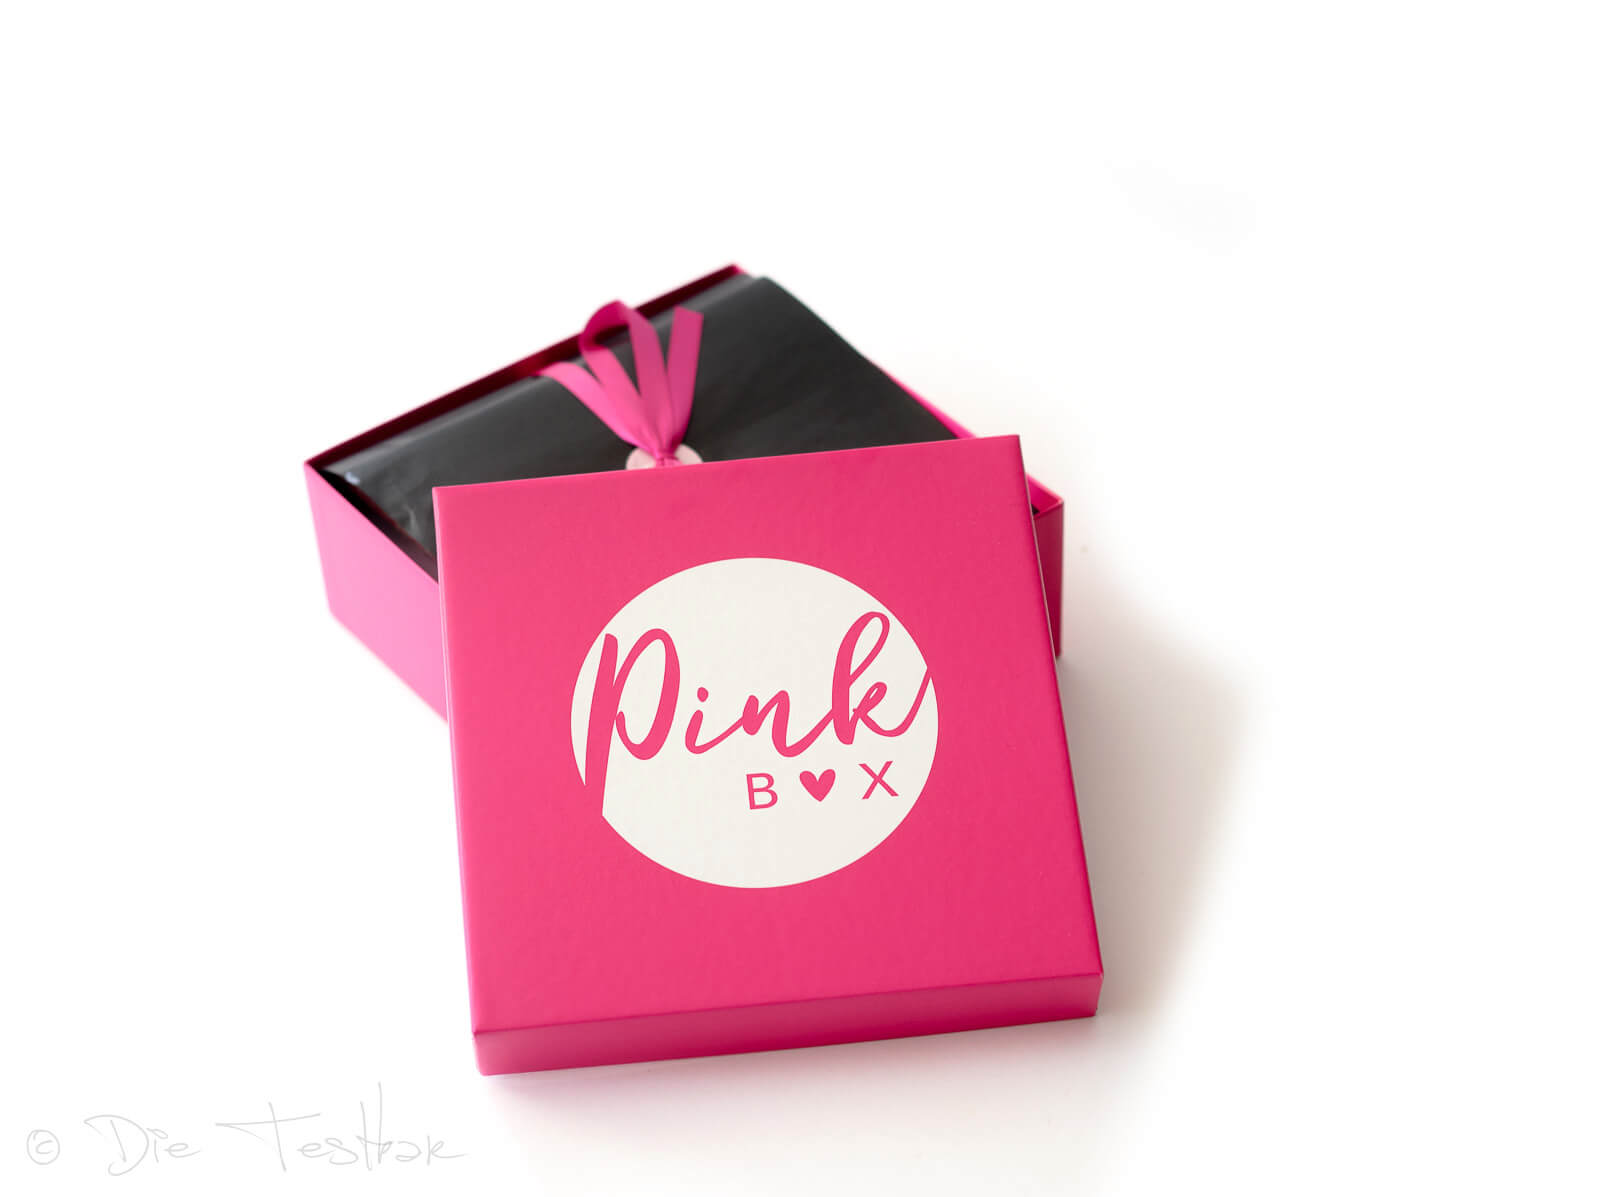 DIE PINK BOX im August 2019 – Pink Box Millennial Pink 2019